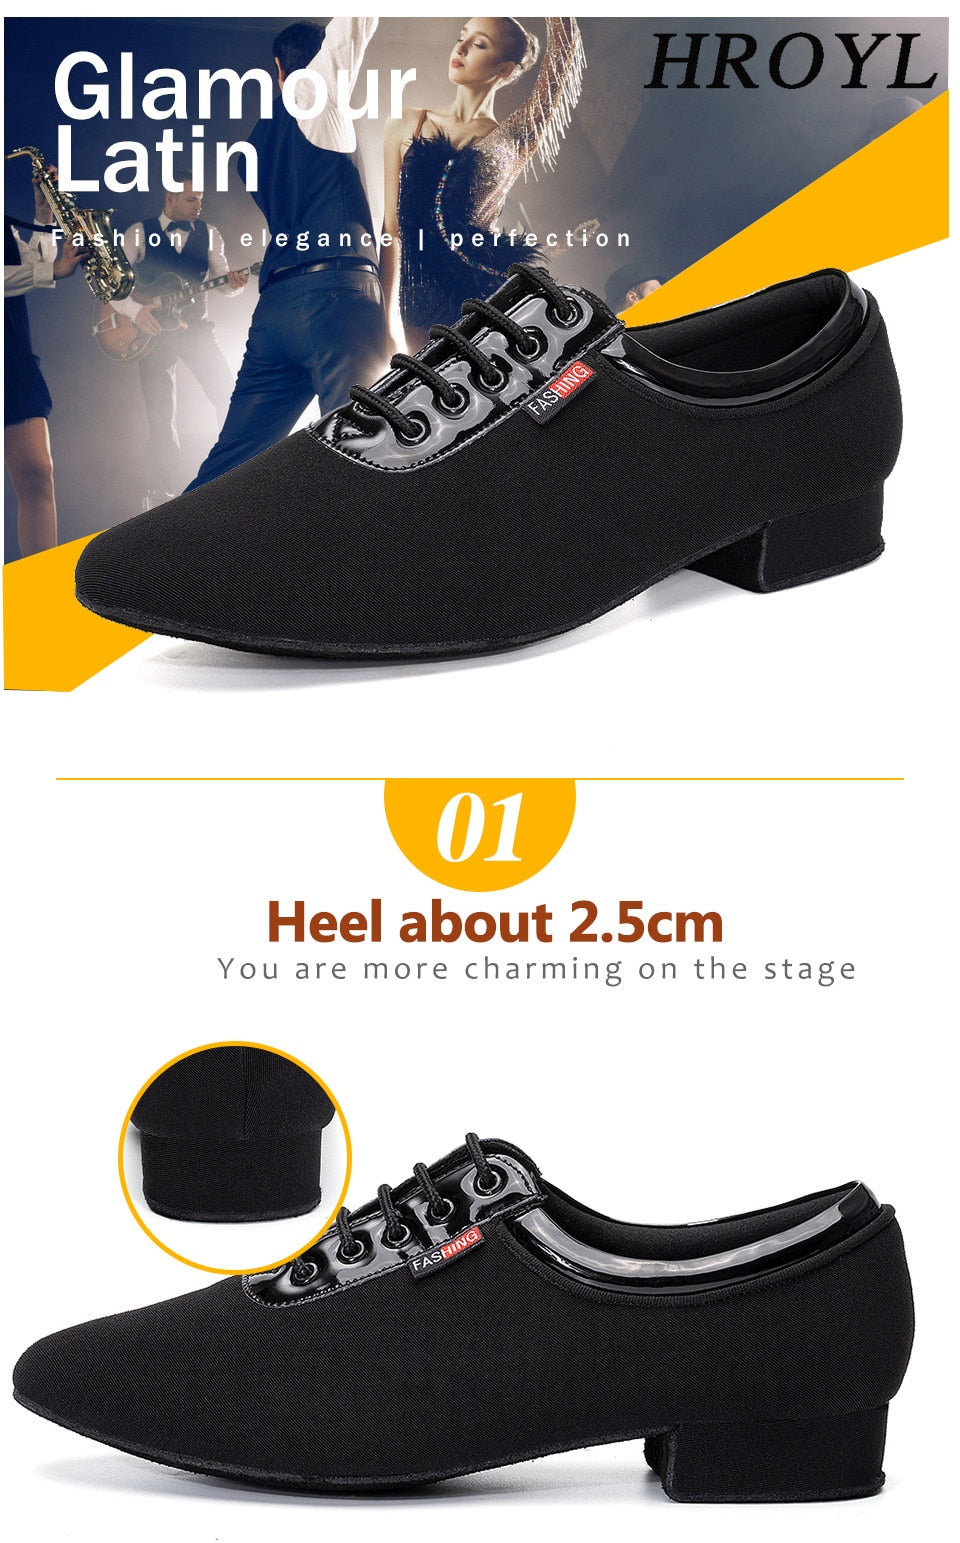 Chaussures de danse à talons 2.5cm pour intérieur ou extérieur